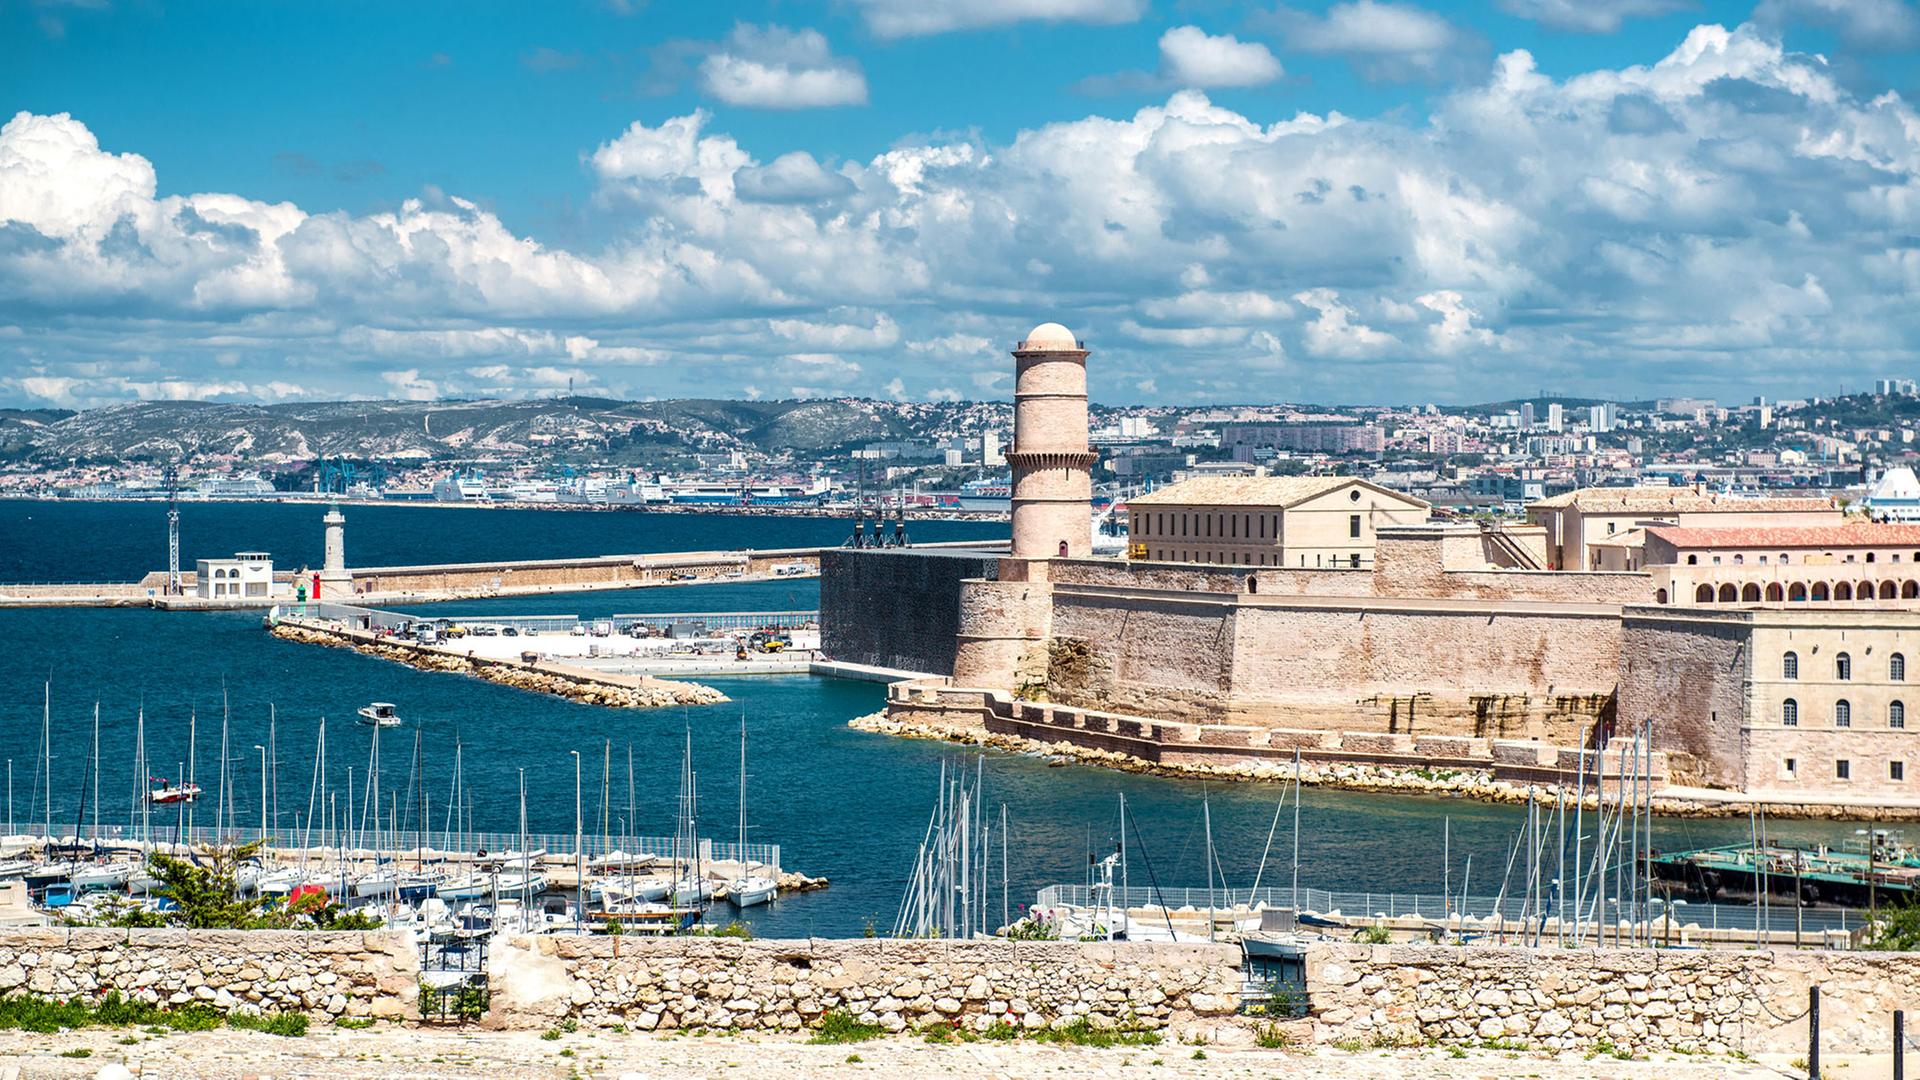 Blick auf das Fort Saint Nicholas in Marseille, Frankreich.